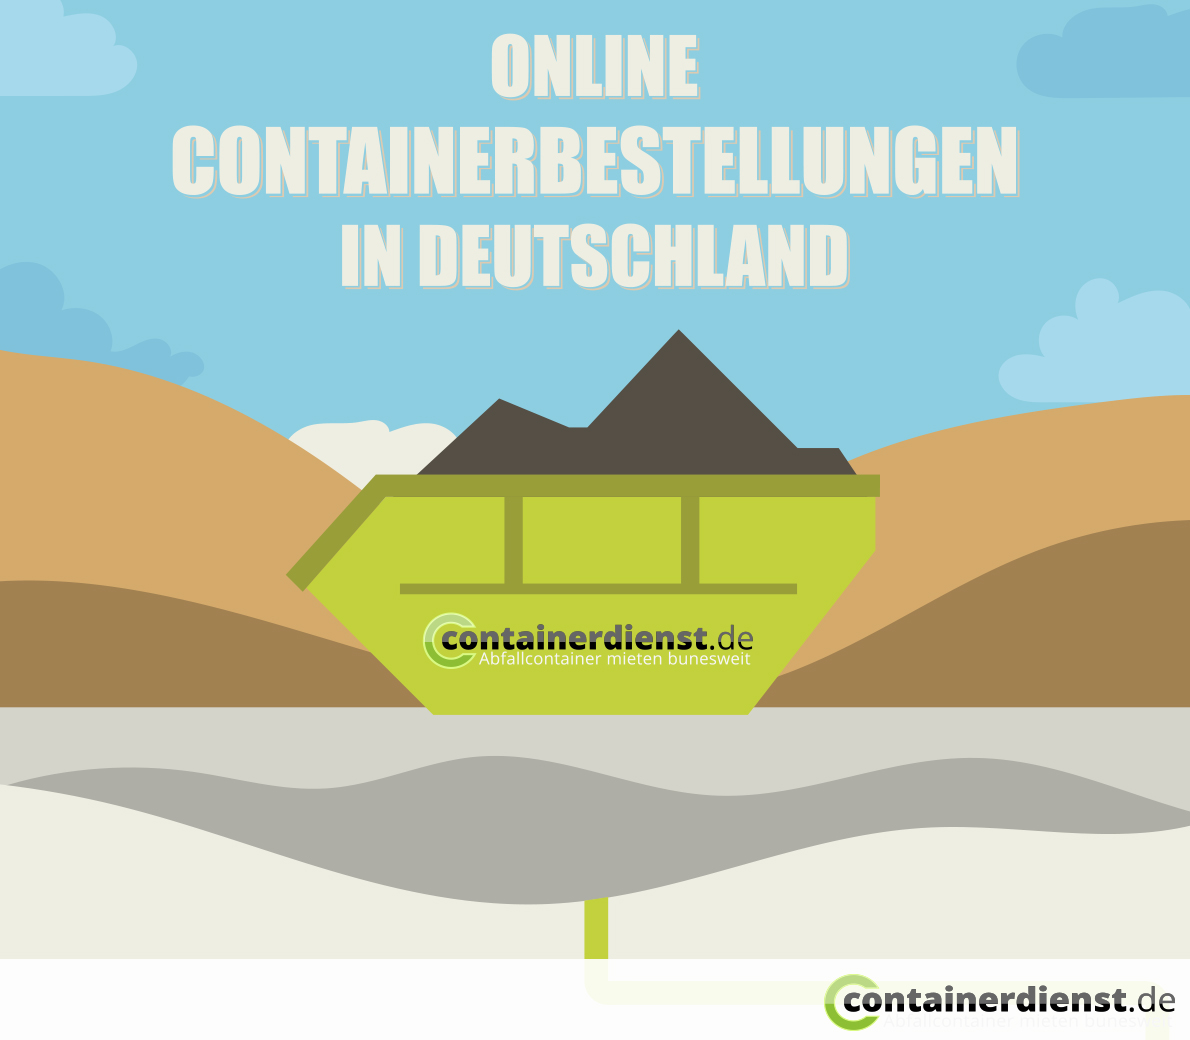 Containerbestellungen in Deutschland